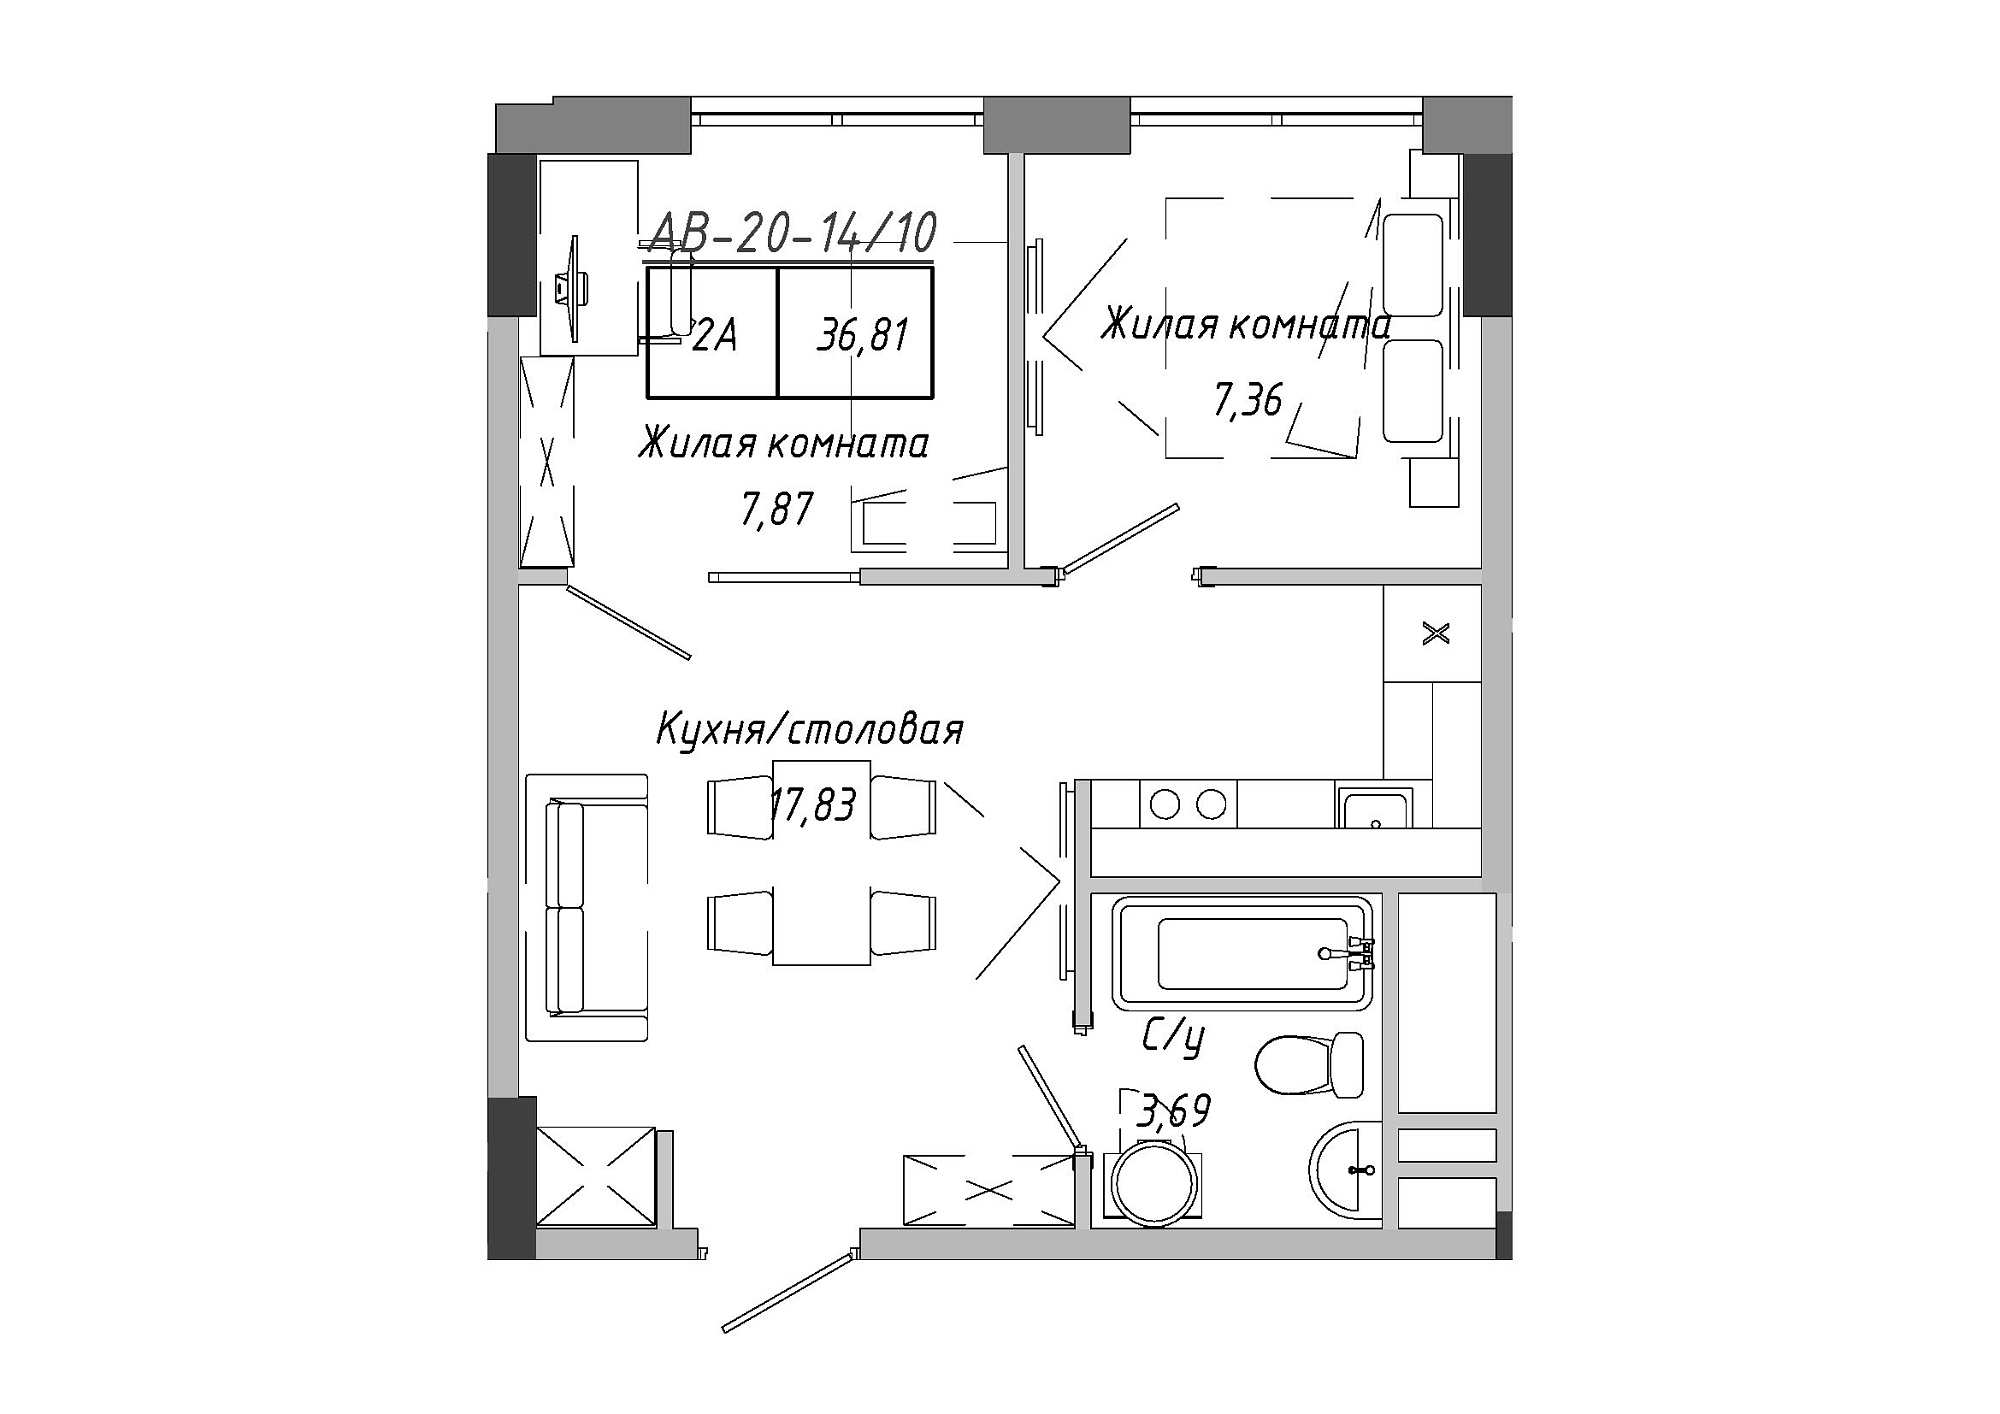 Планування 2-к квартира площею 36.81м2, AB-20-14/00110.